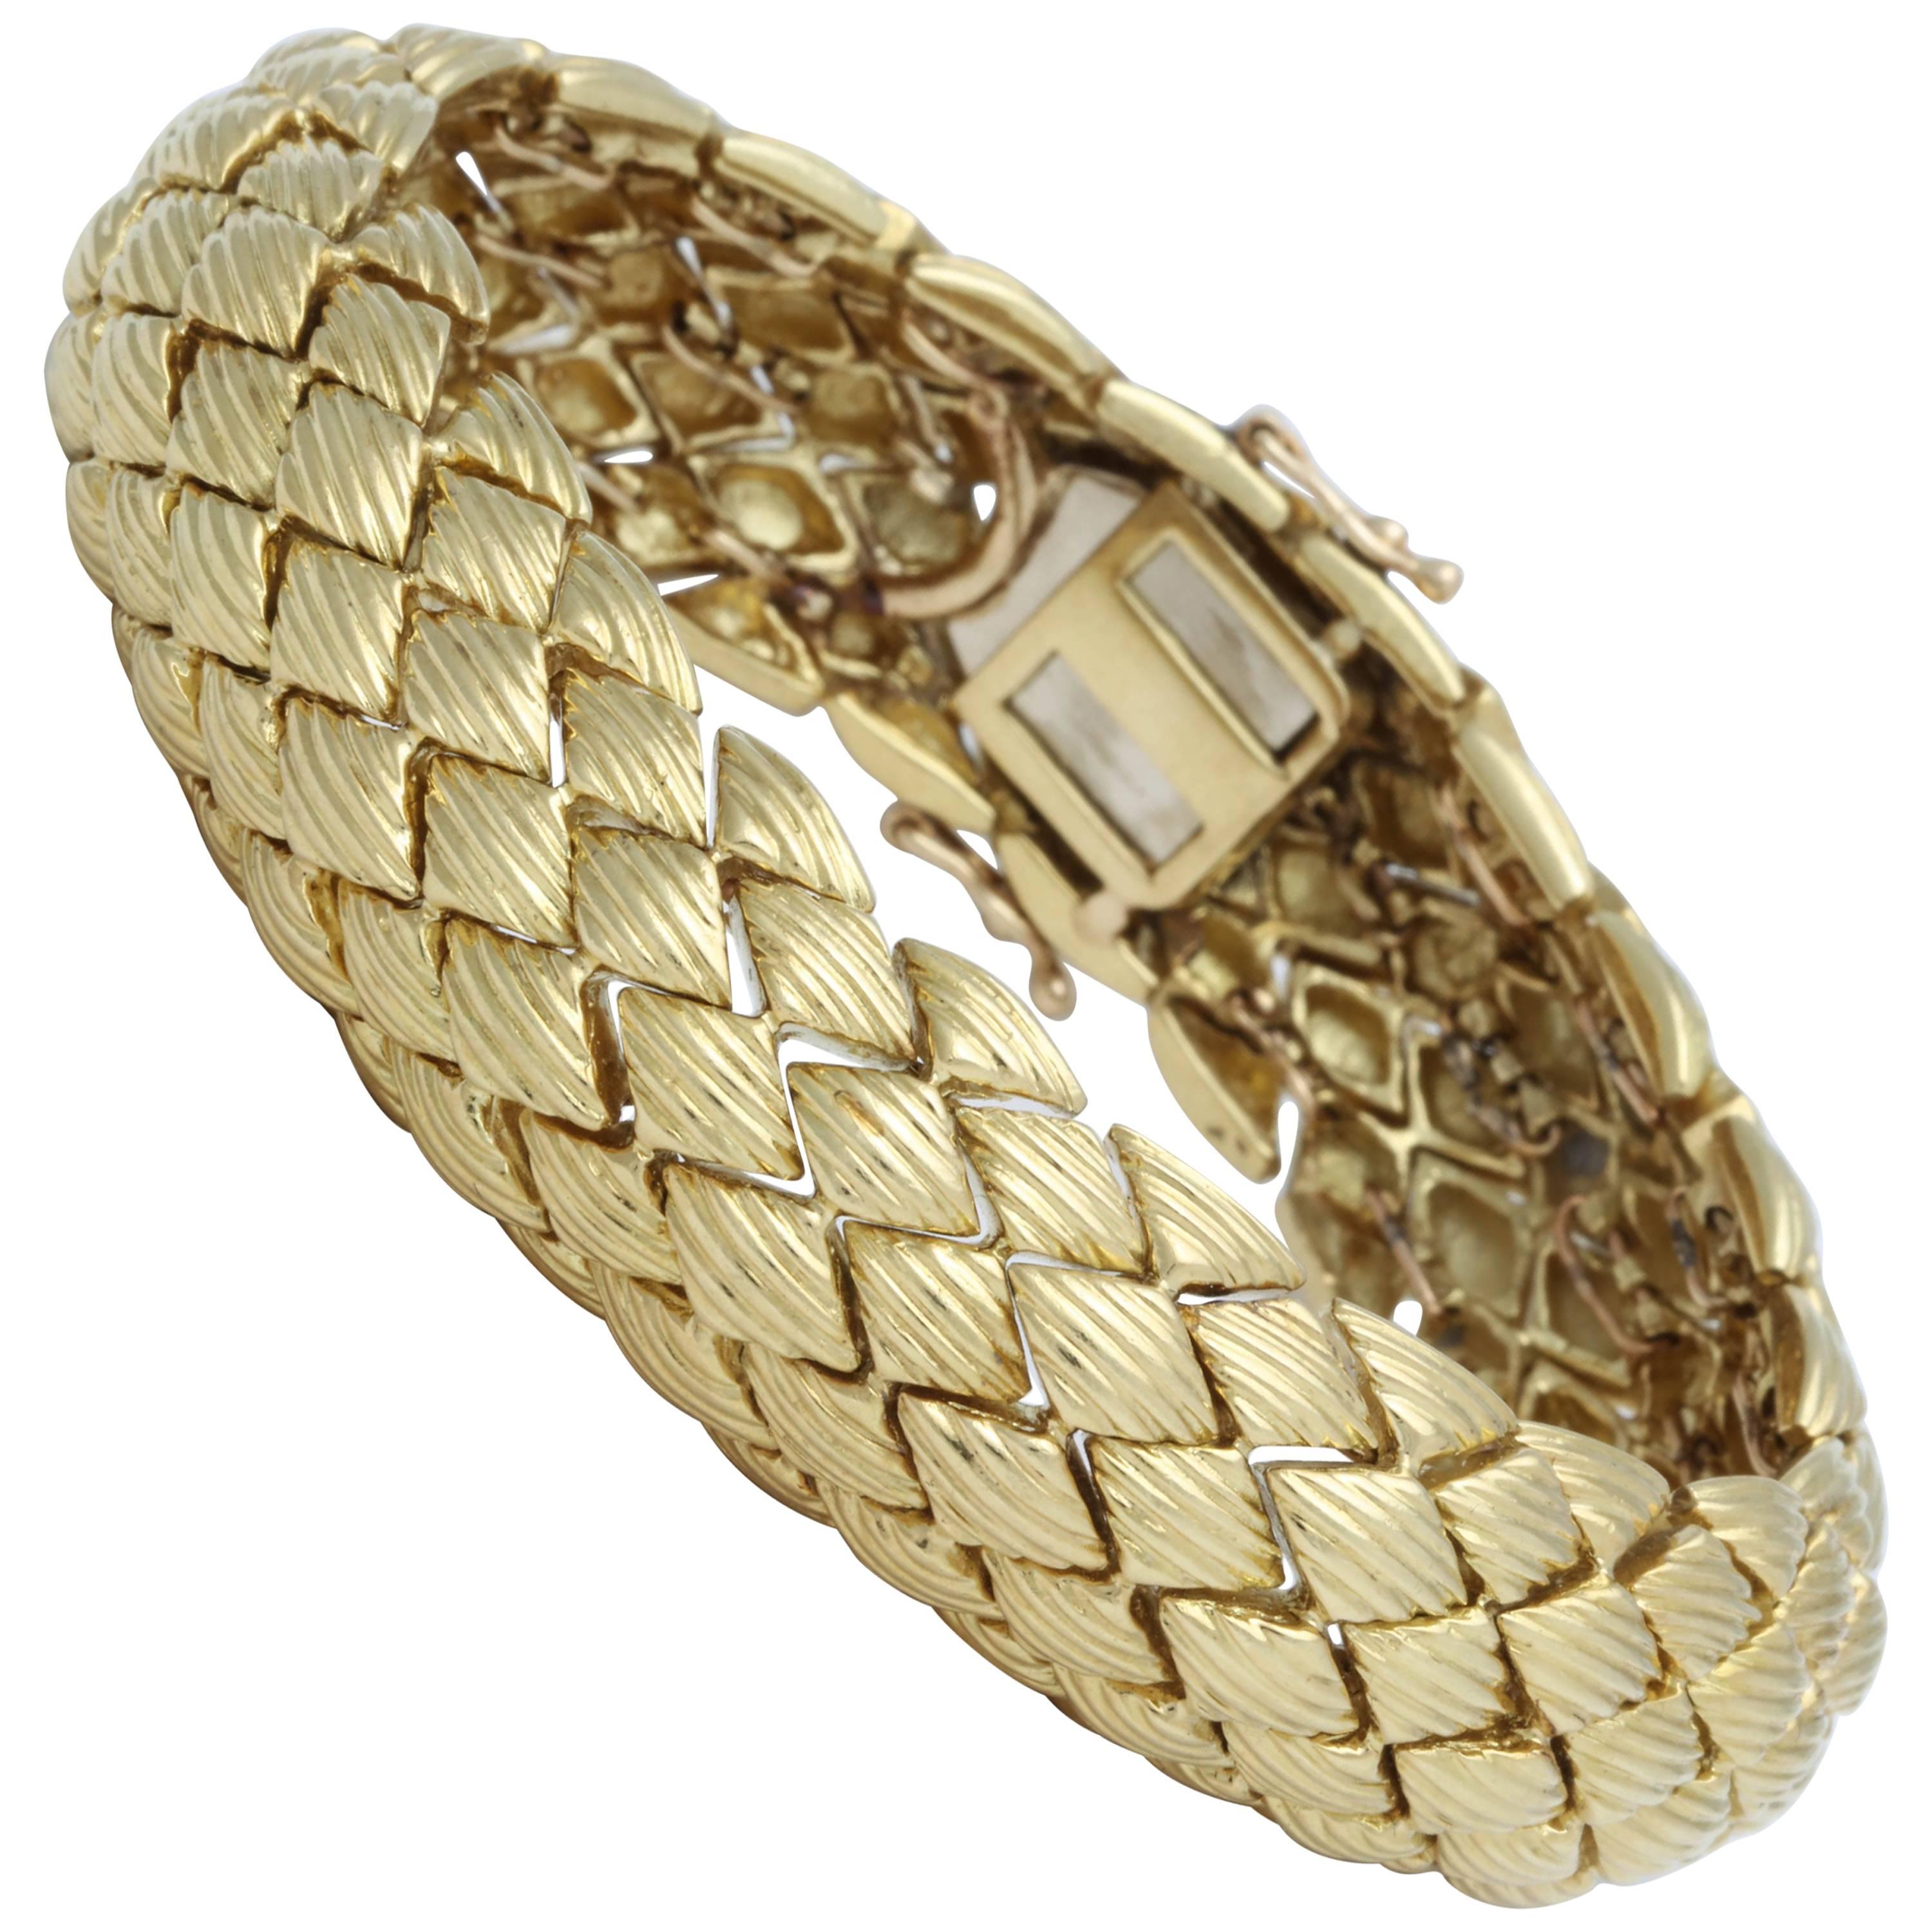 Gold Bracelet with Engraved Design